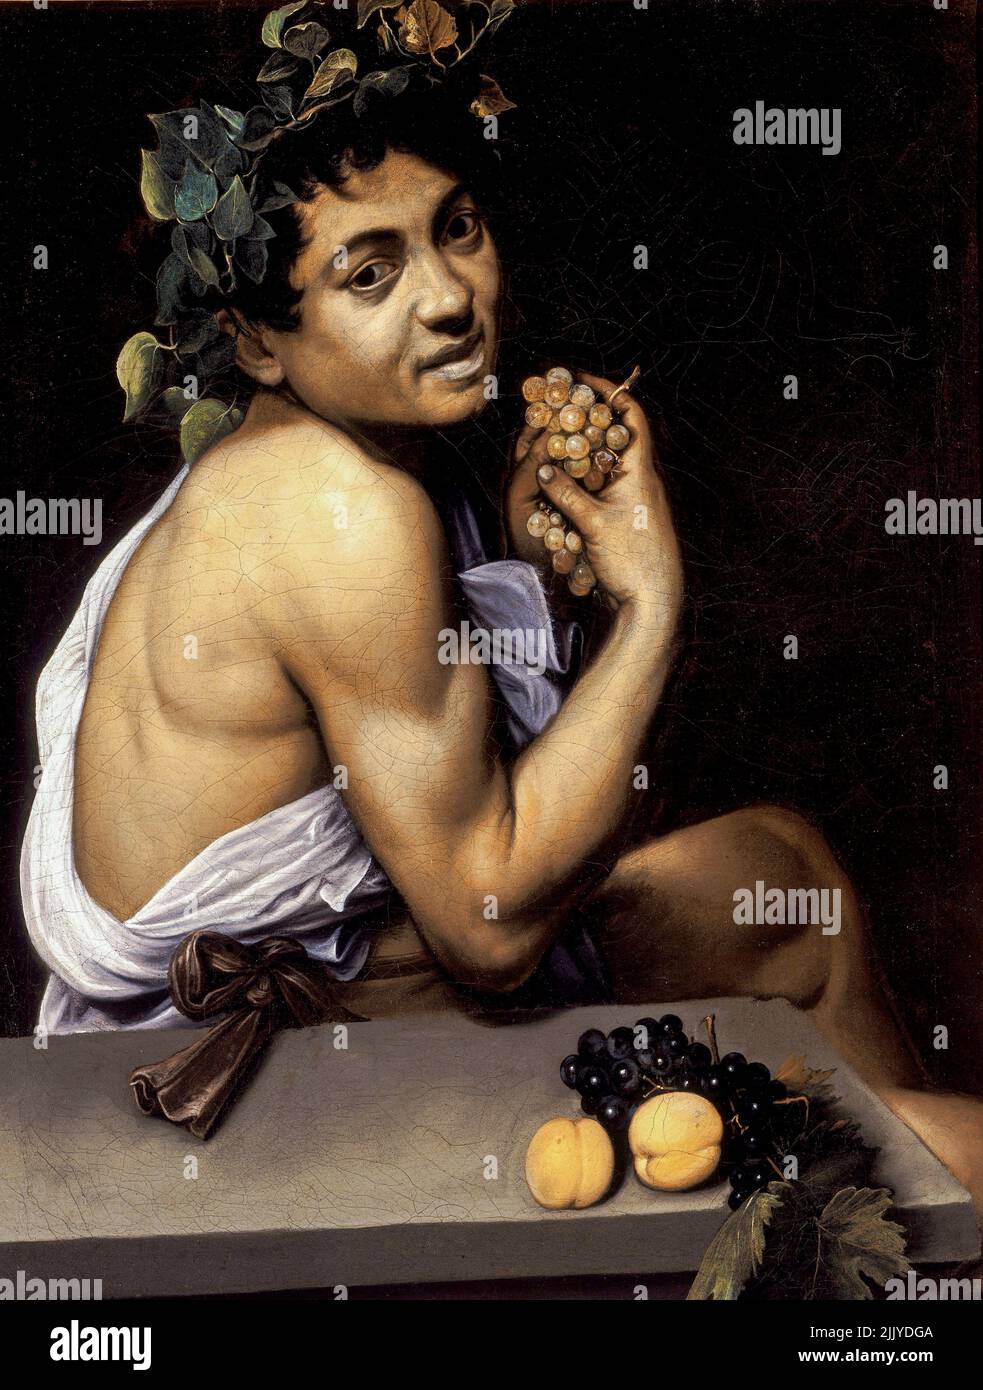 Michelangelo Merisi da Cravaggio, Caravaggio; Bacchino Malato, Bacchus enfermo joven; 1593; óleo sobre lienzo. Galería Borghese, Roma, Italia Foto de stock